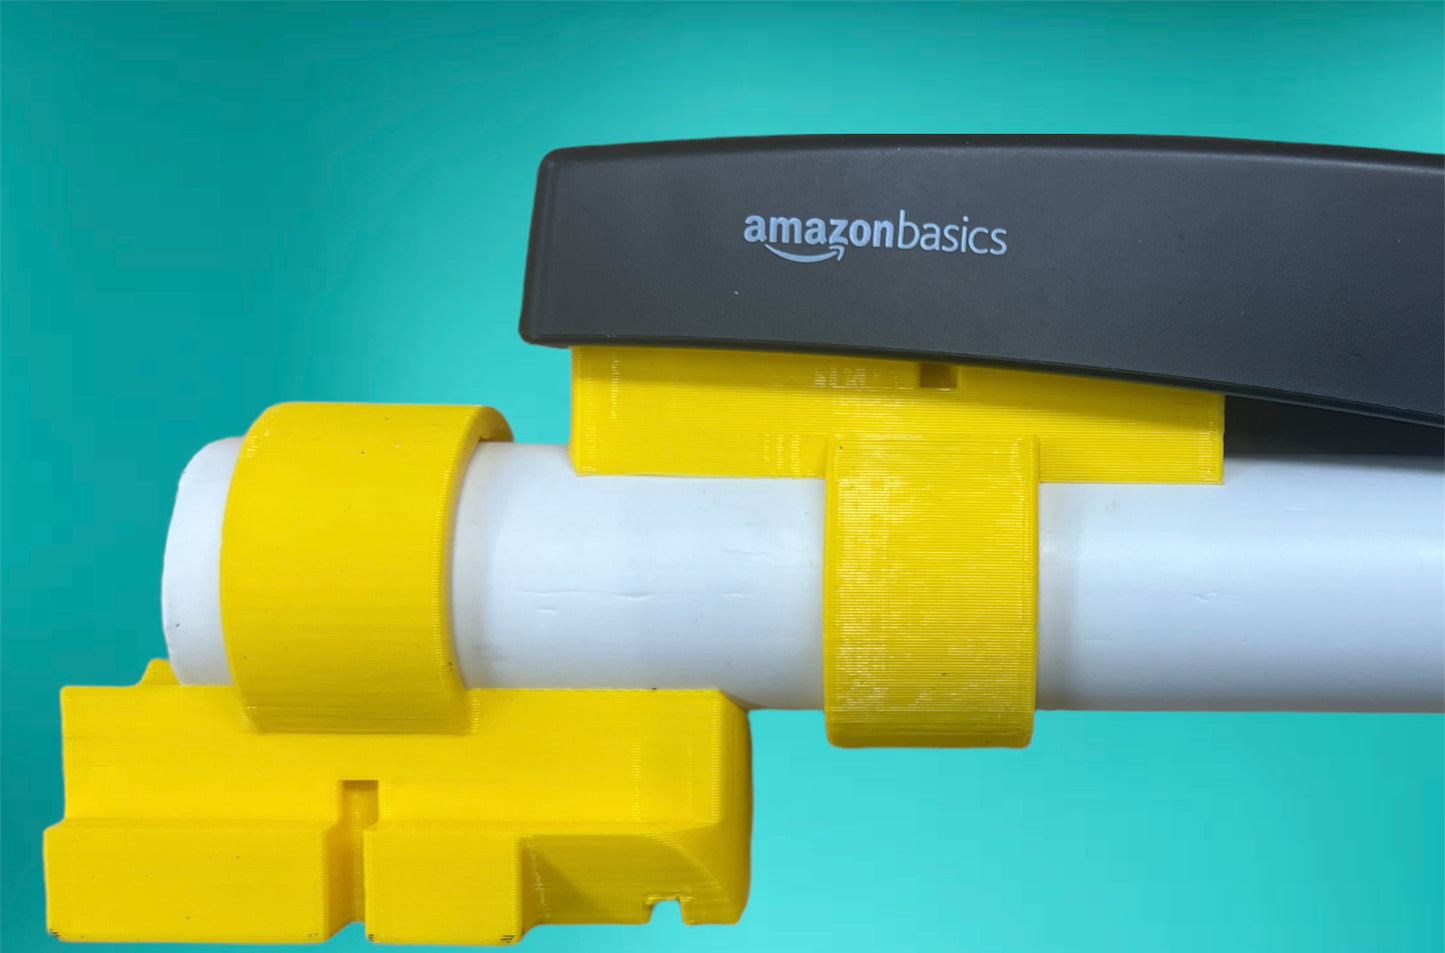 Stapler Adapter for Amazon Basics Stapler